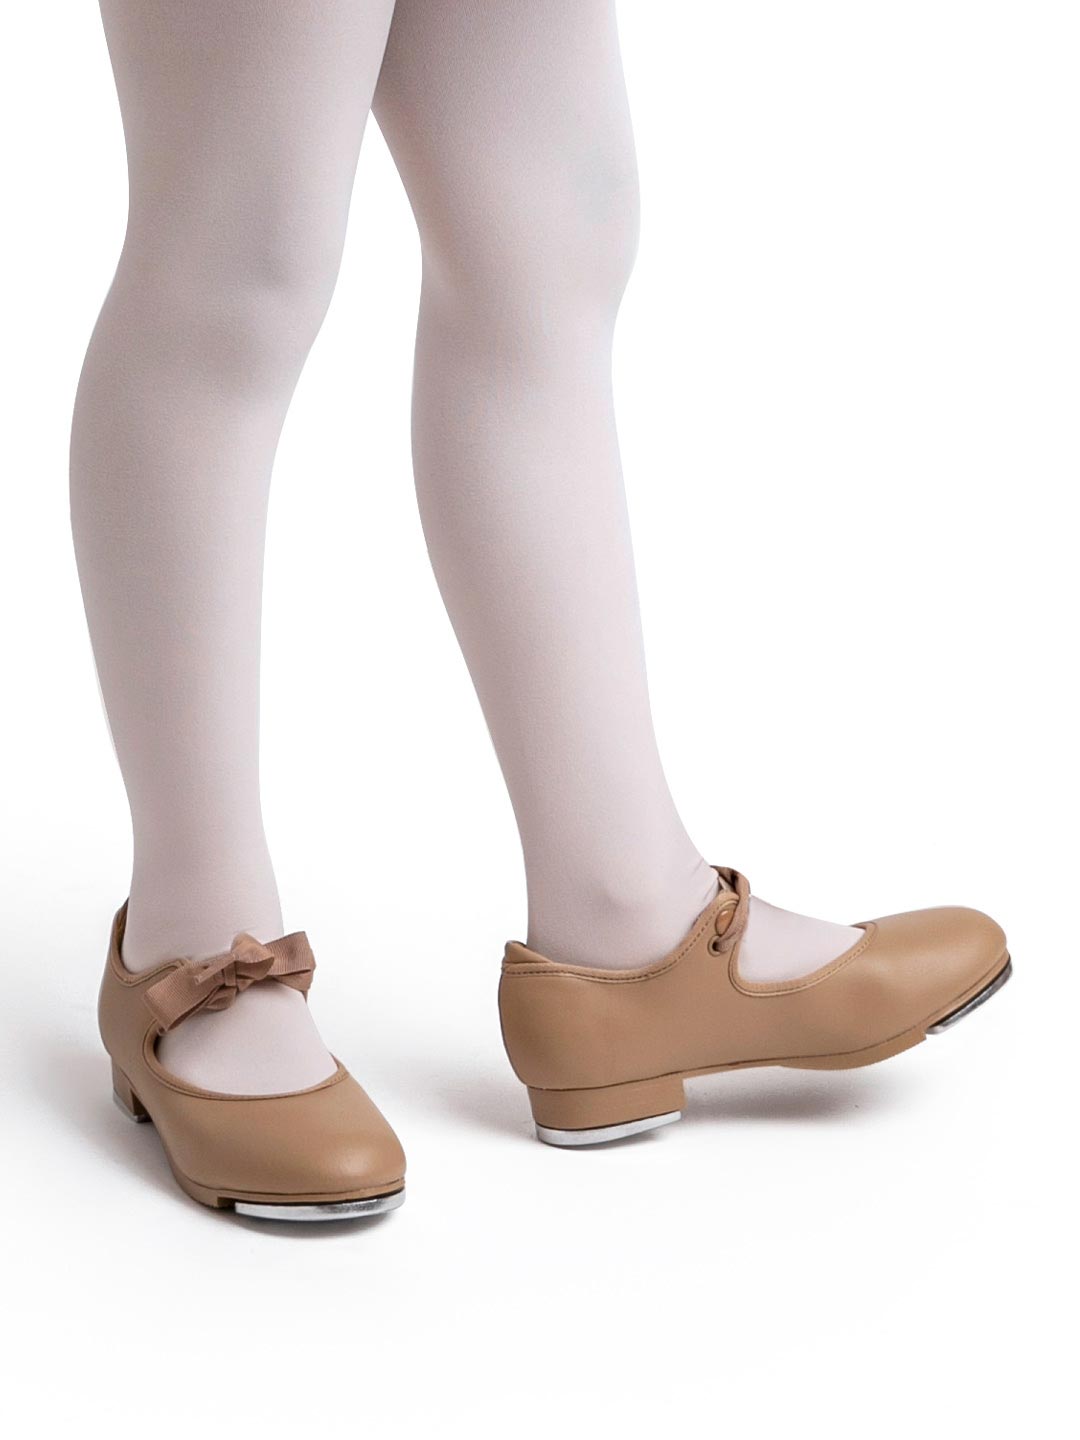 Schoenen Meisjesschoenen Dansschoenen Fits Size 4.5 Capezio 3686 Adult Size 5 Medium Black U-Shell Buckle Tap Shoes 